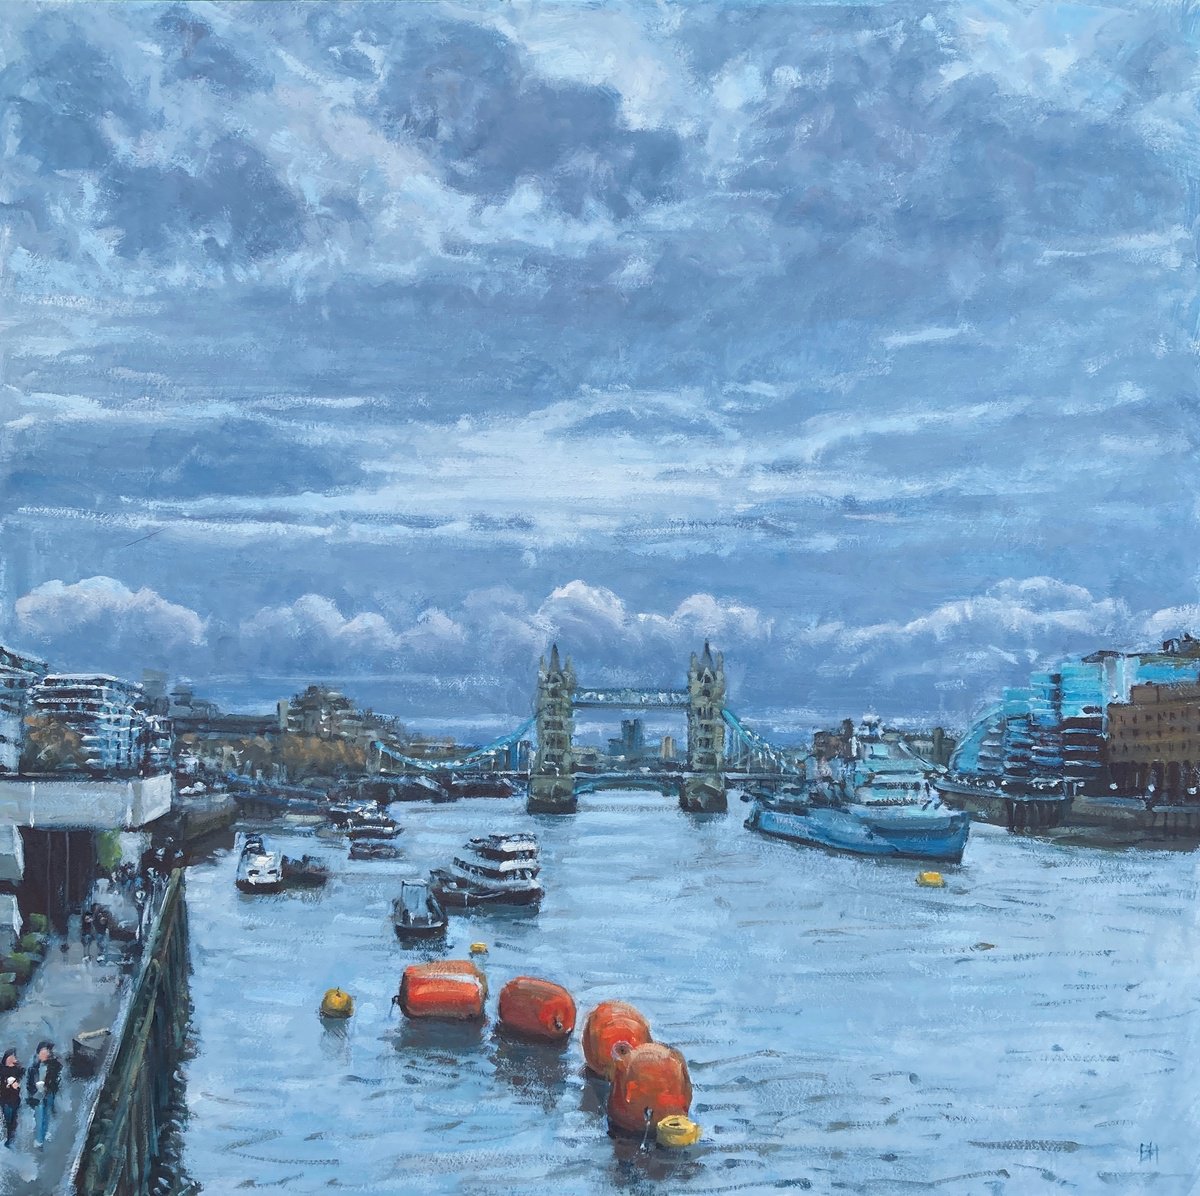 Towards Tower Bridge II by Ben Hughes